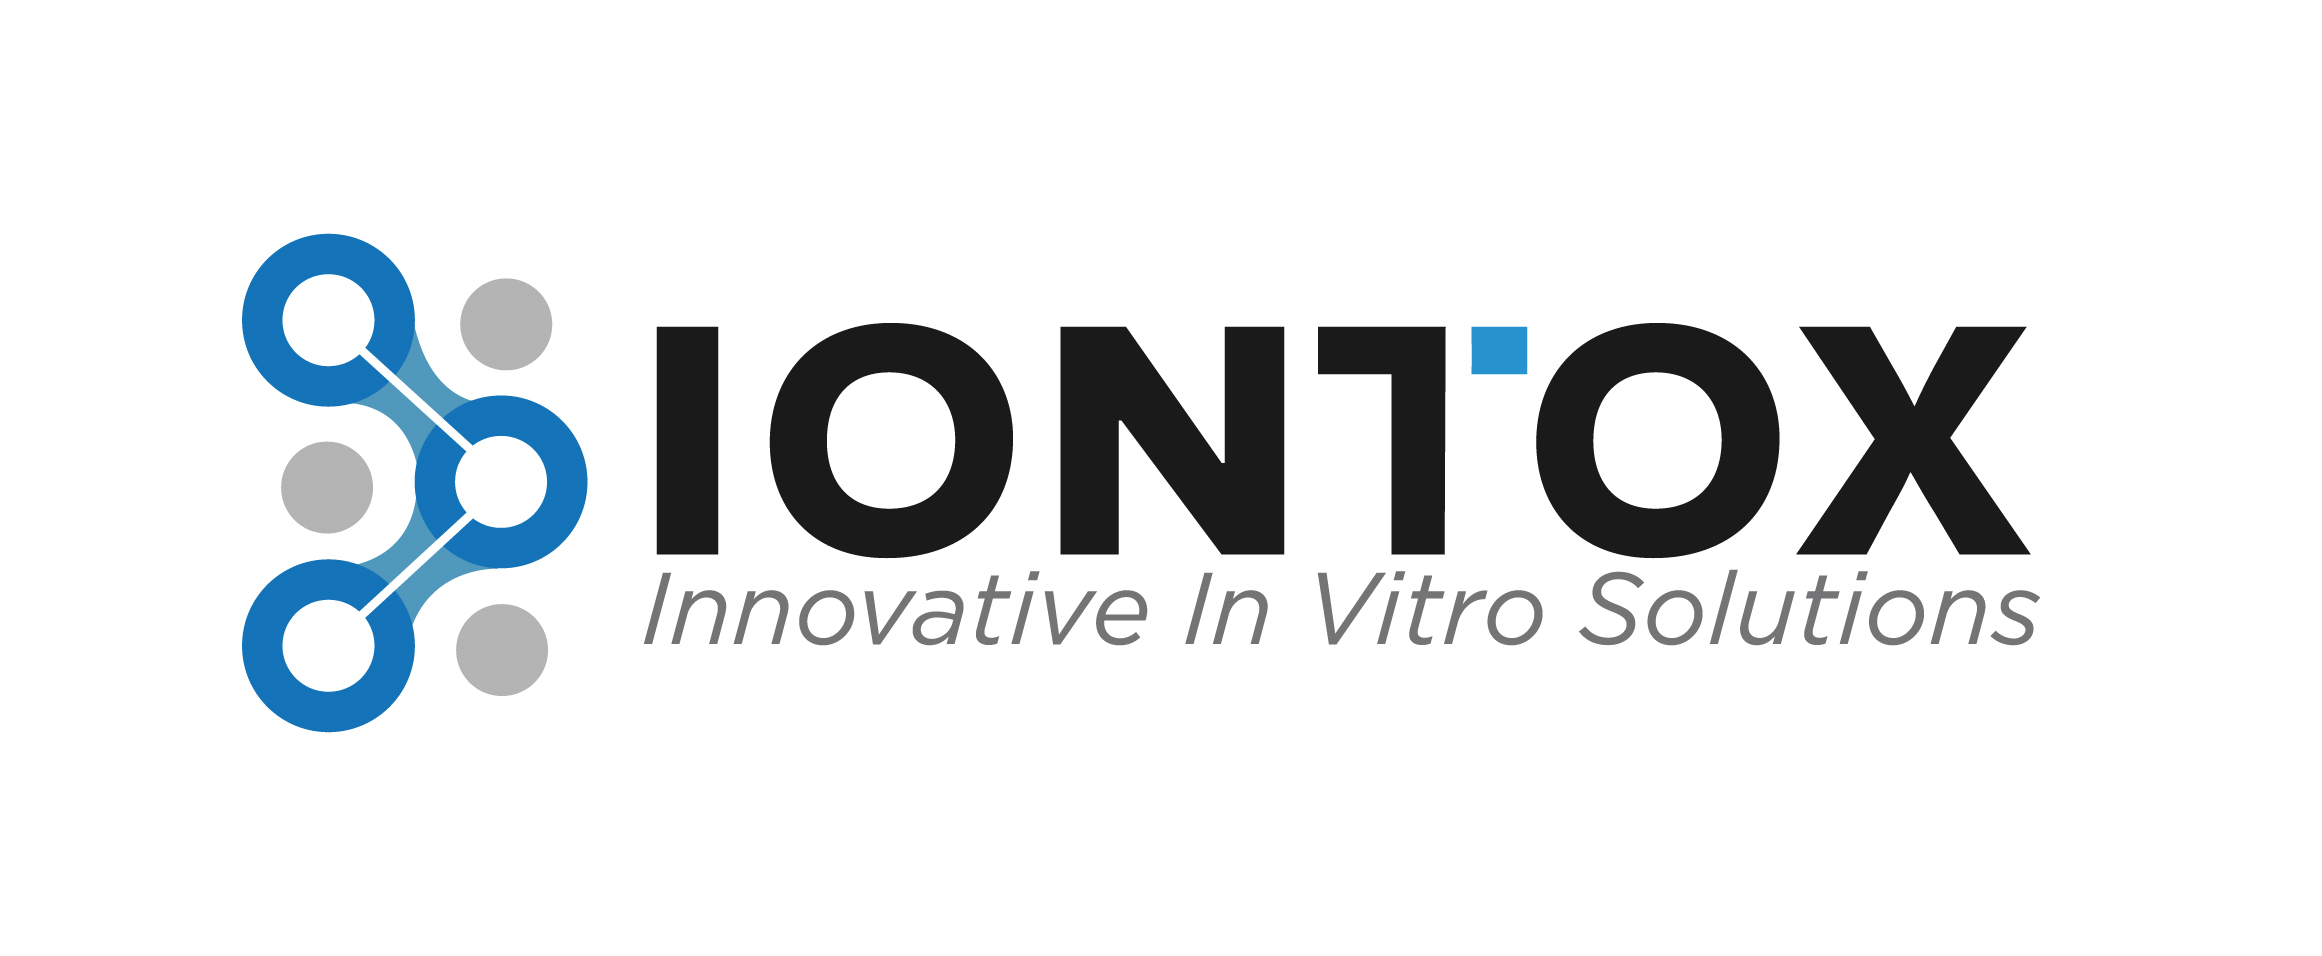 Iontox_logo-1